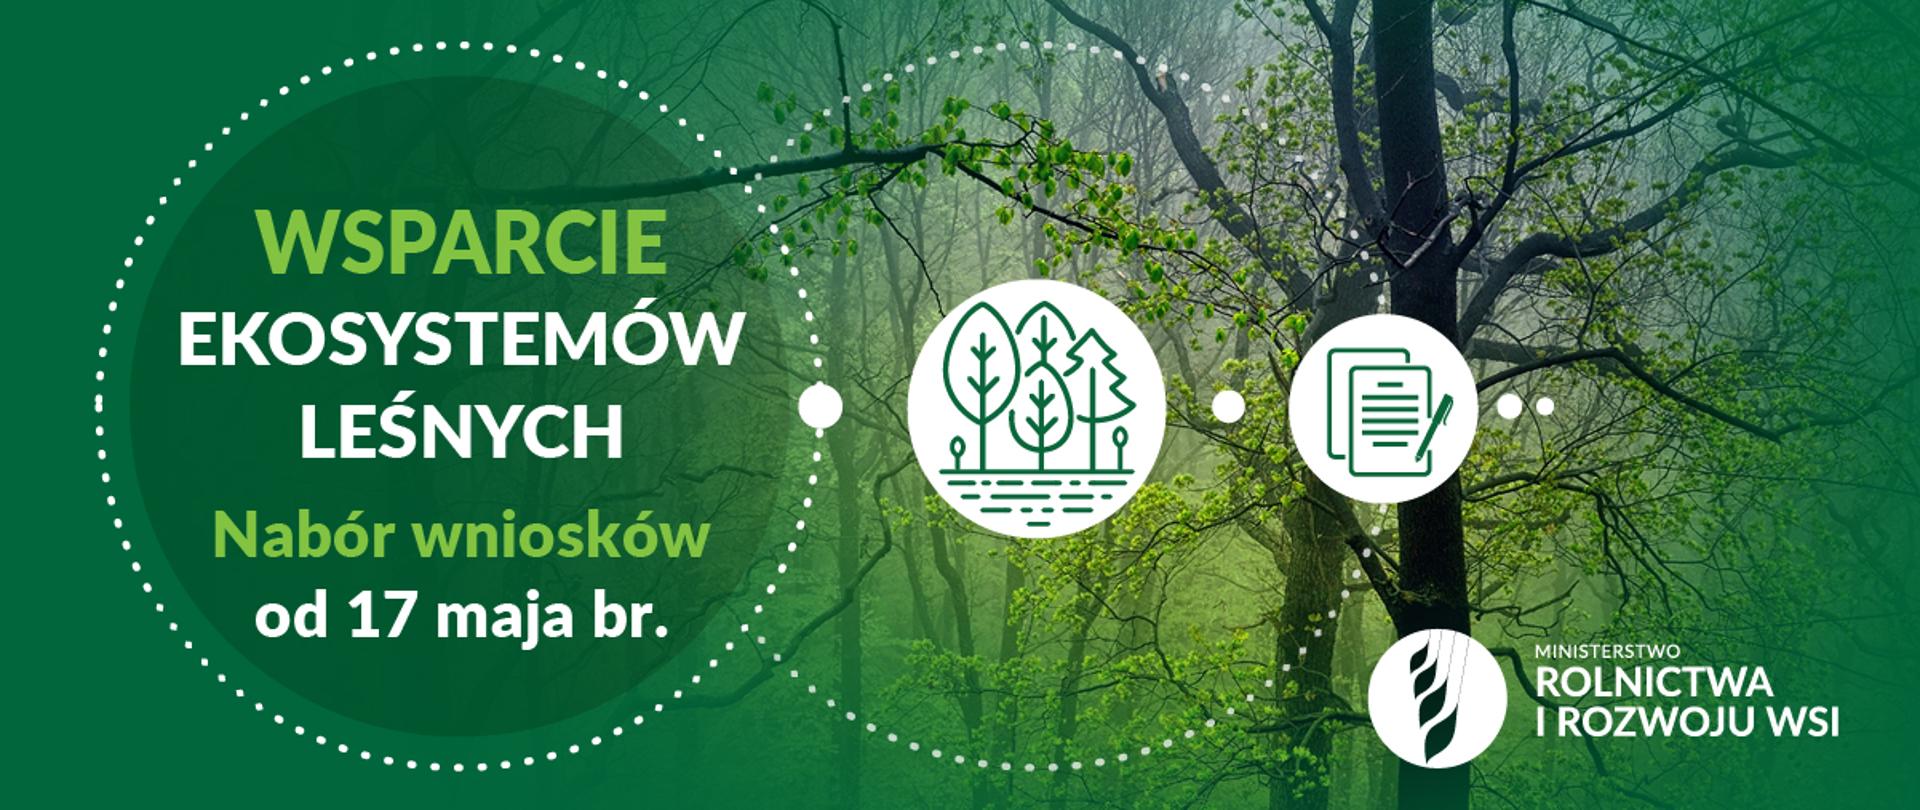 grafika do komunikatu "Wsparcie ekosystemów leśnych w ramach PROW 2014-2020".
Drzewa w lesie.